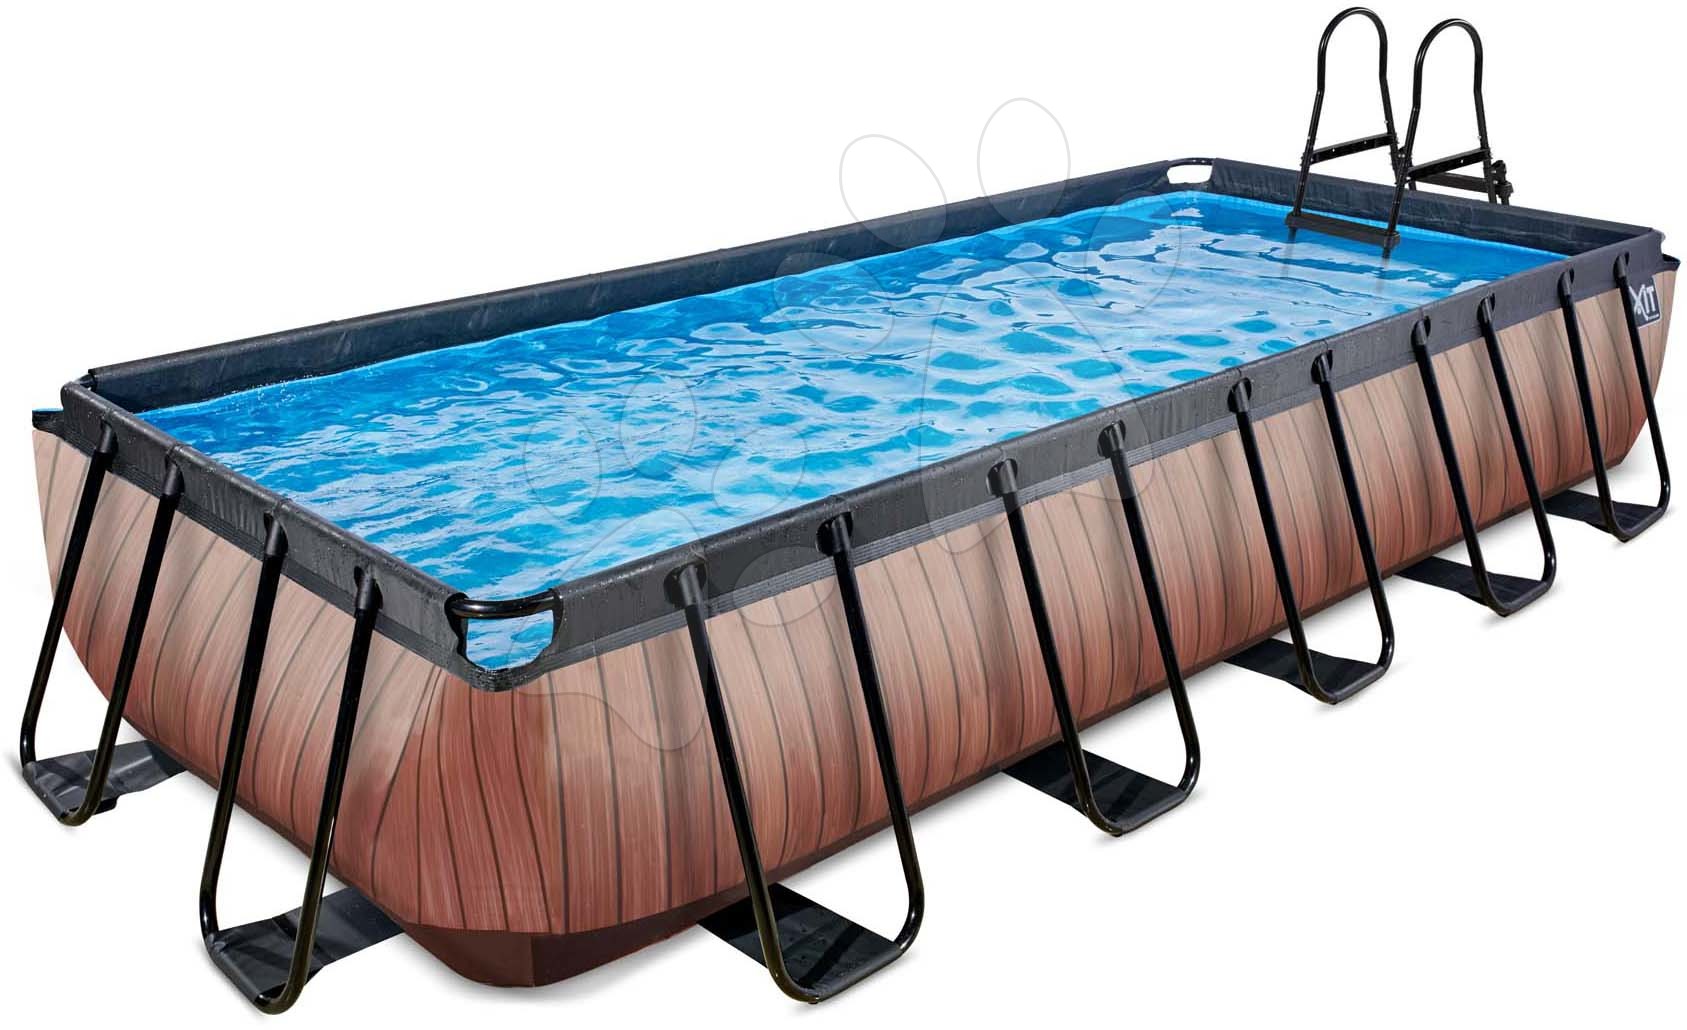 Medence szűrővel Wood pool Exit Toys acél medencekeret 540*250*100 cm barna 6 évtől